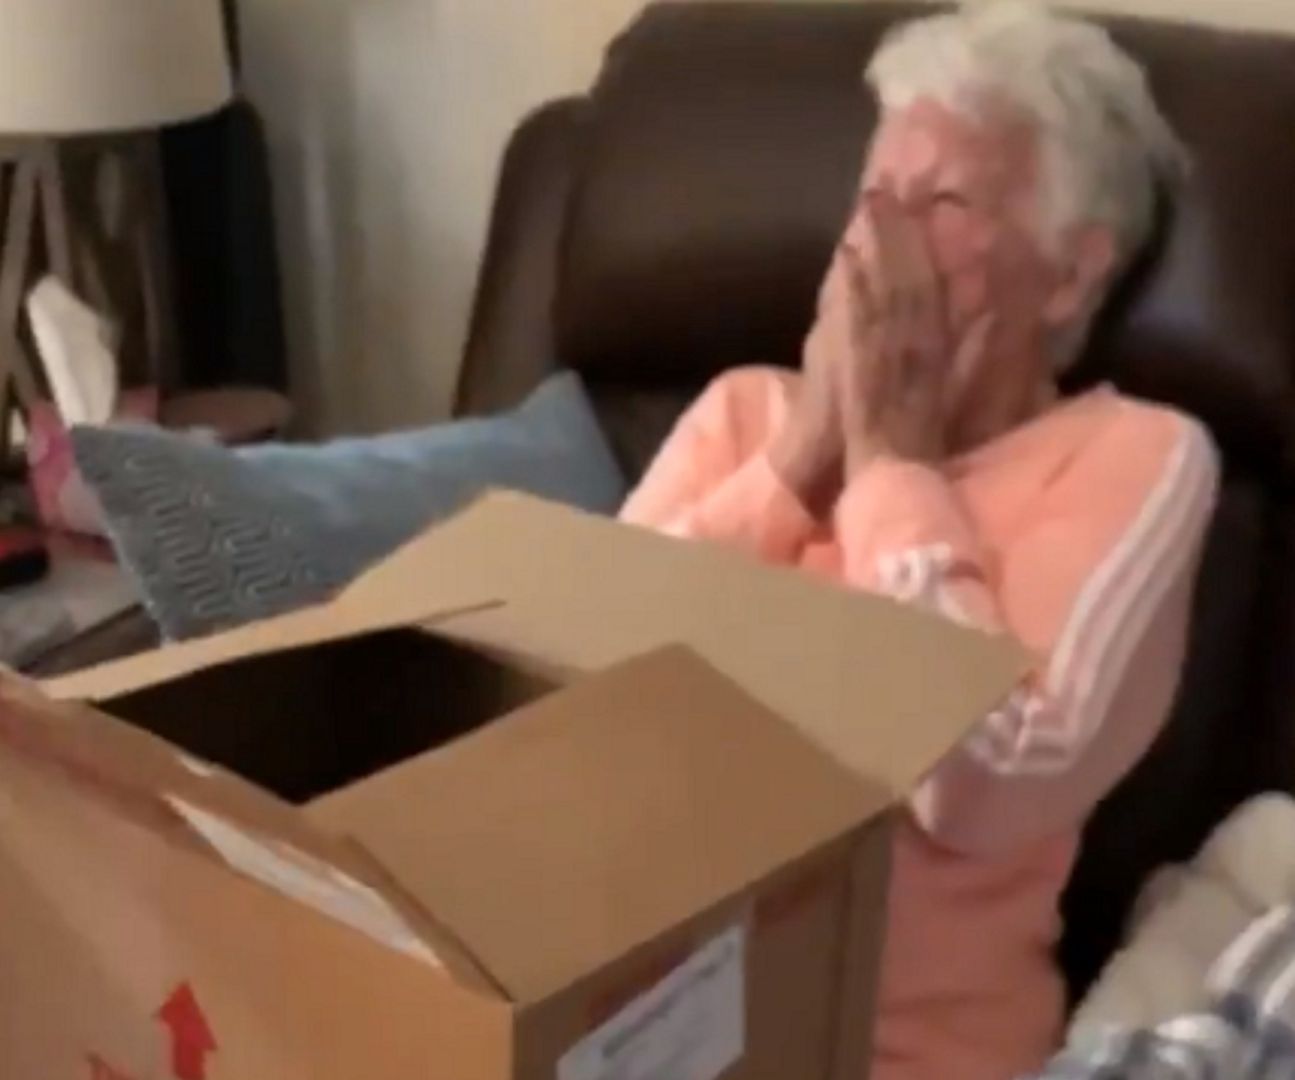 Reakcja babci na prezent. Wykrztusiła tylko: "o mój Boże"